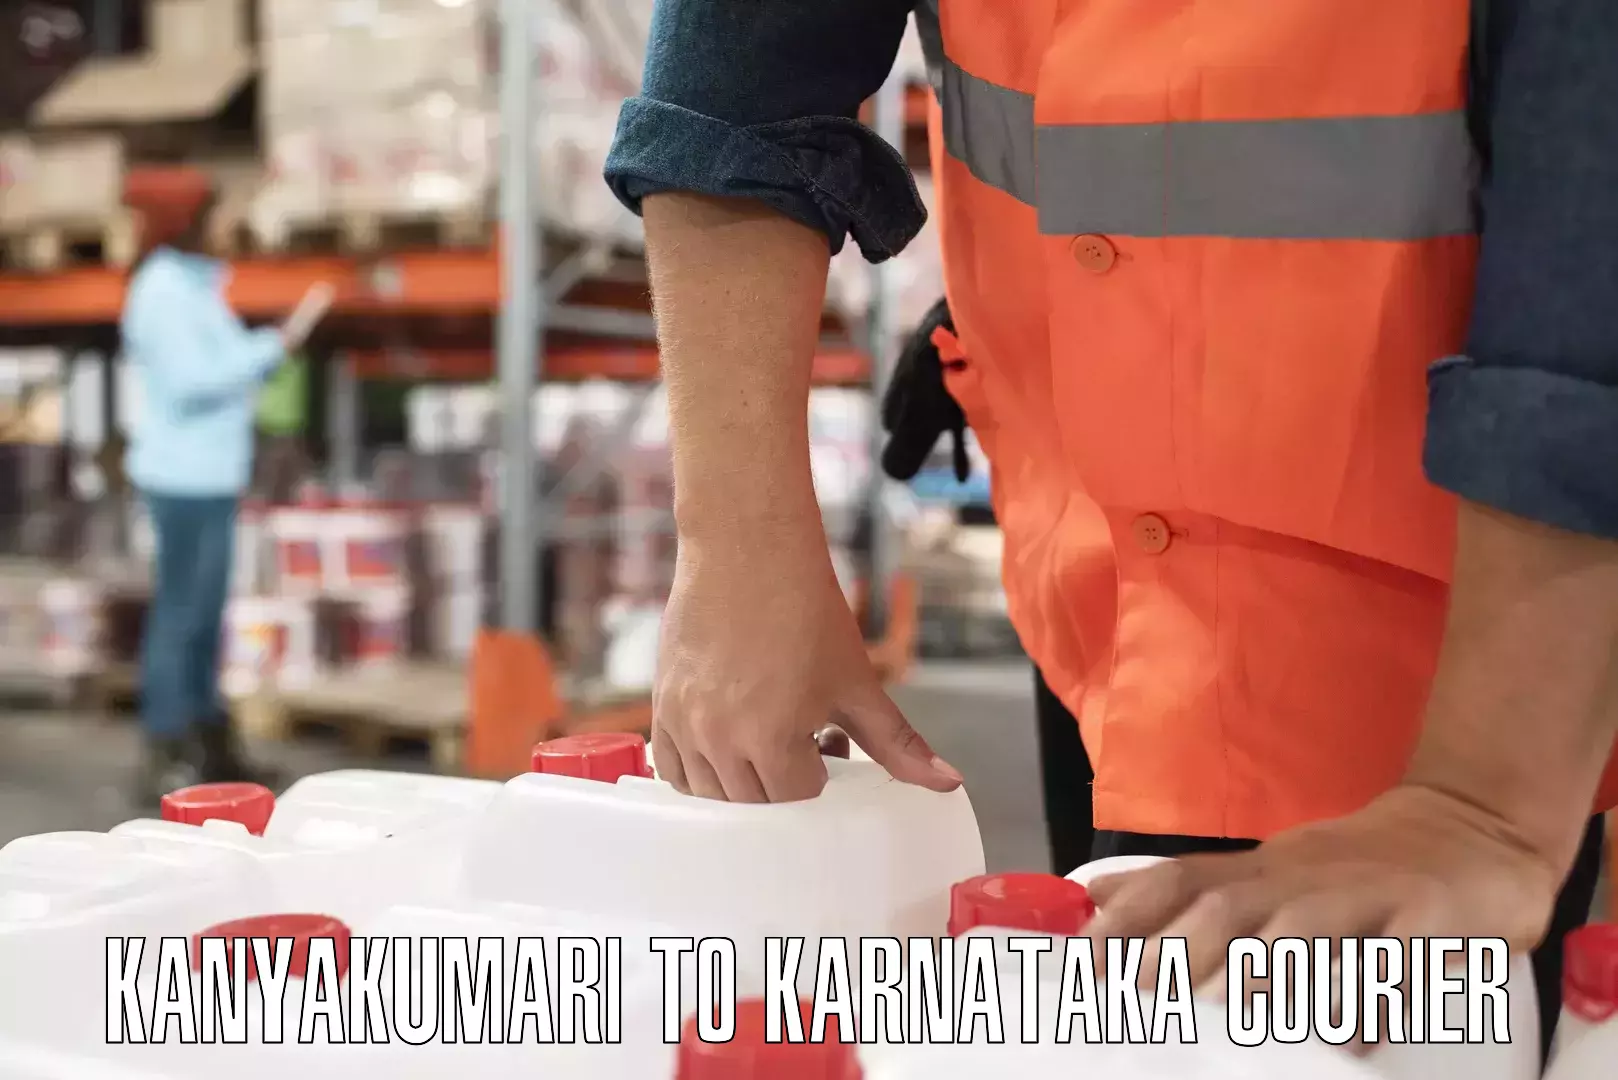 Smart logistics solutions Kanyakumari to Karnataka